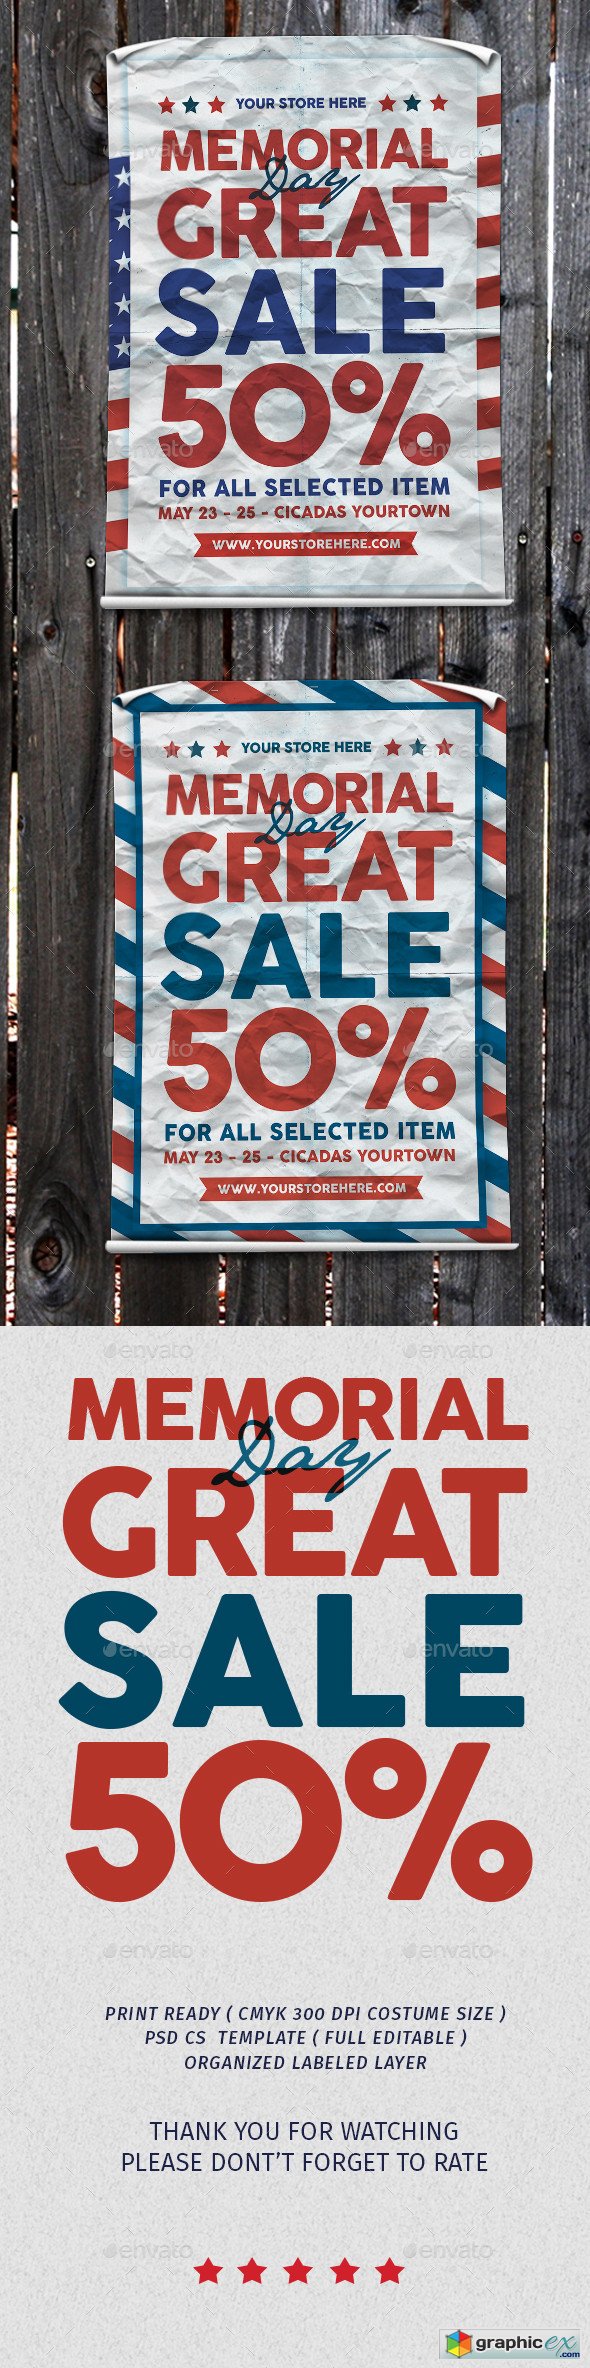 Memorial Great sale